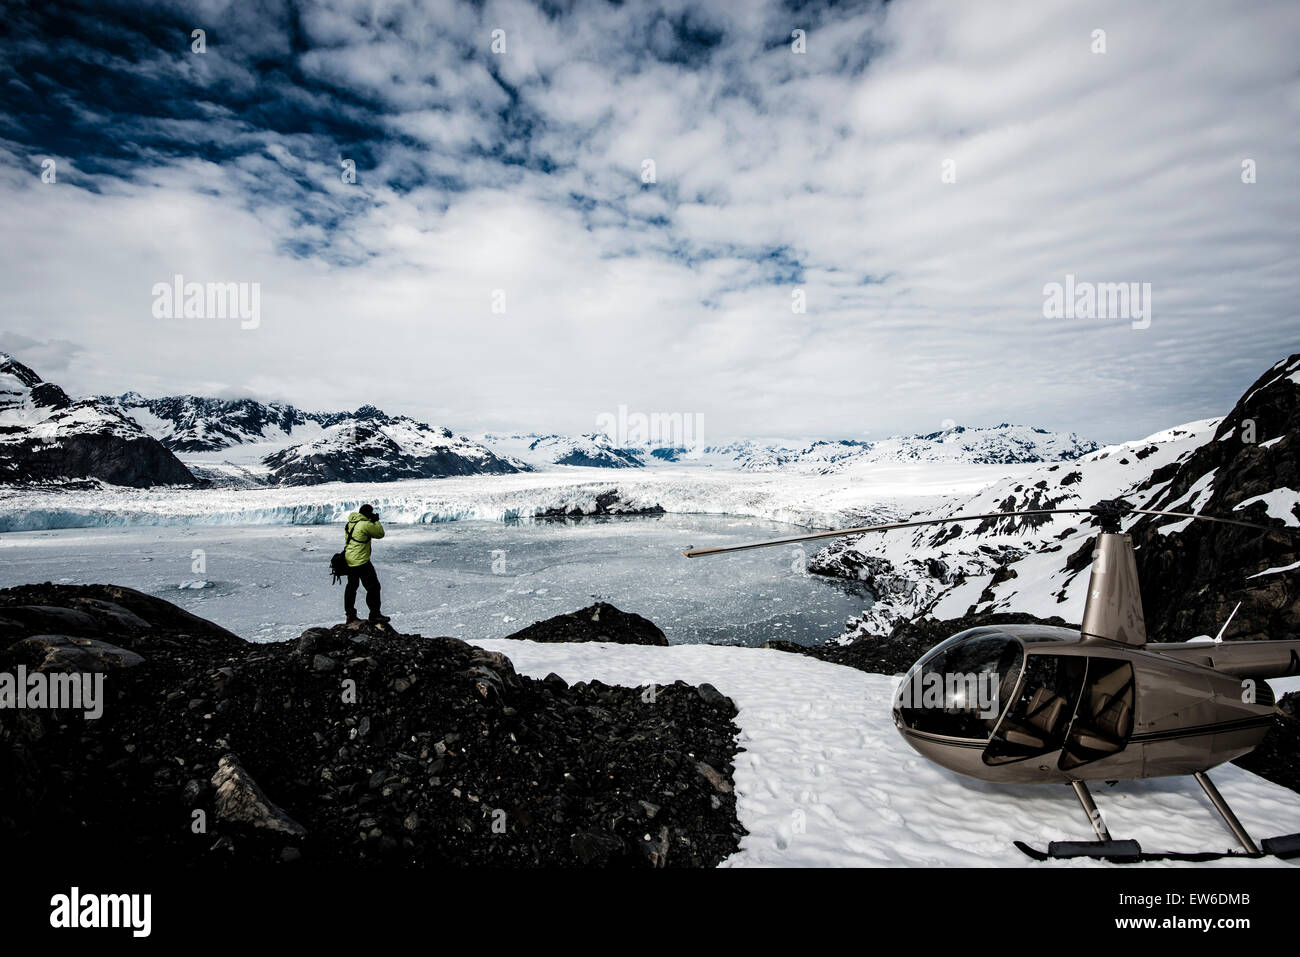 Un homme prenant des photos d'un glacier de fusion avec un hélicoptère en attente à proximité. L'Alaska, USA. Banque D'Images